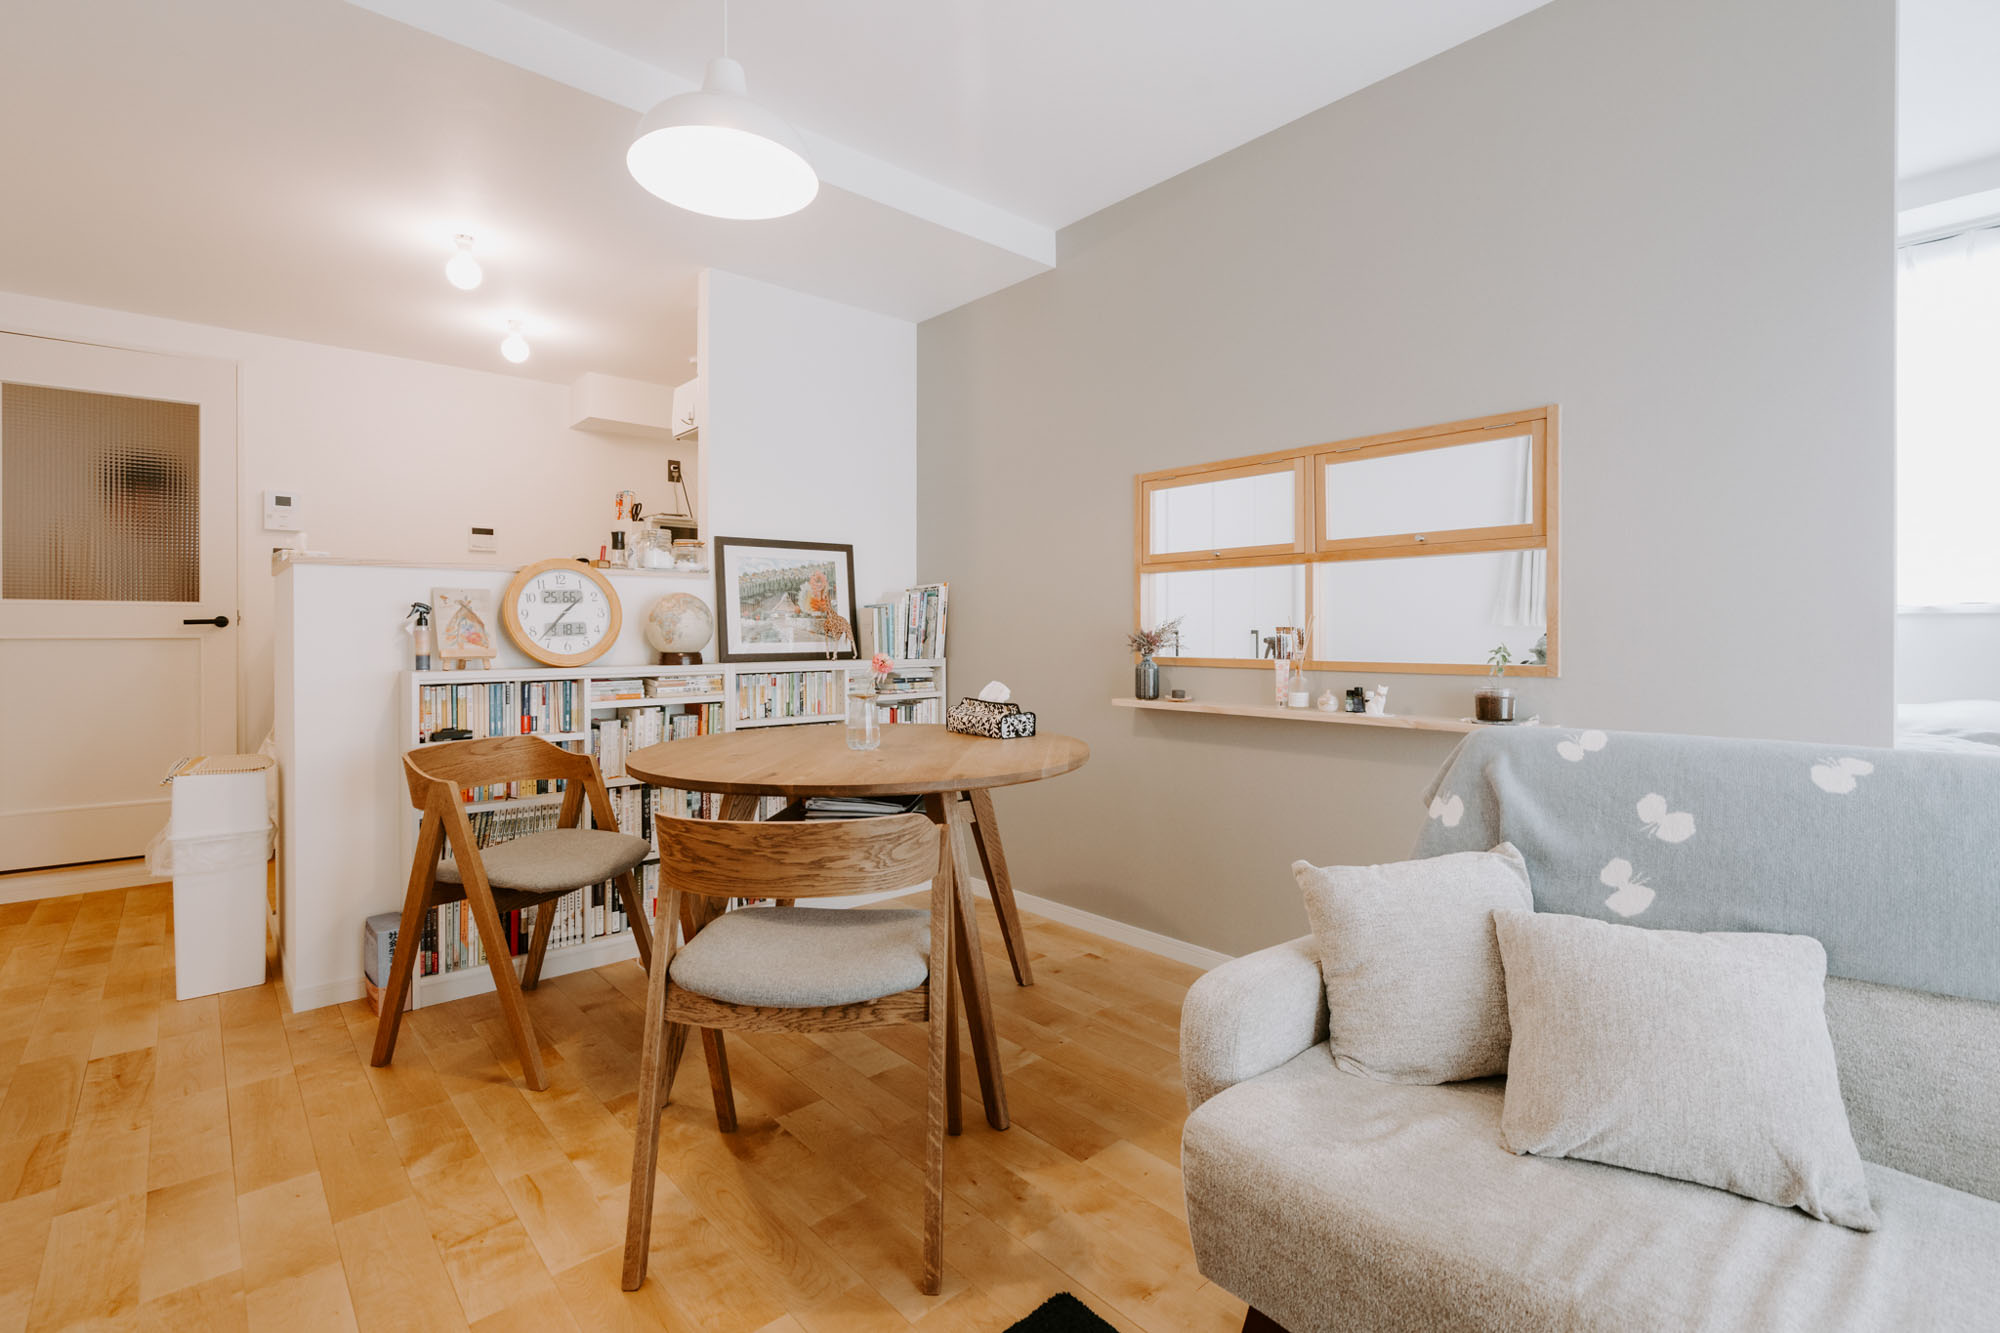 LDKには対面式のキッチンがあり、丸い木のダイニングテーブル、壁と同じグレーのソファを置いて、やわらかい雰囲気を作られています。